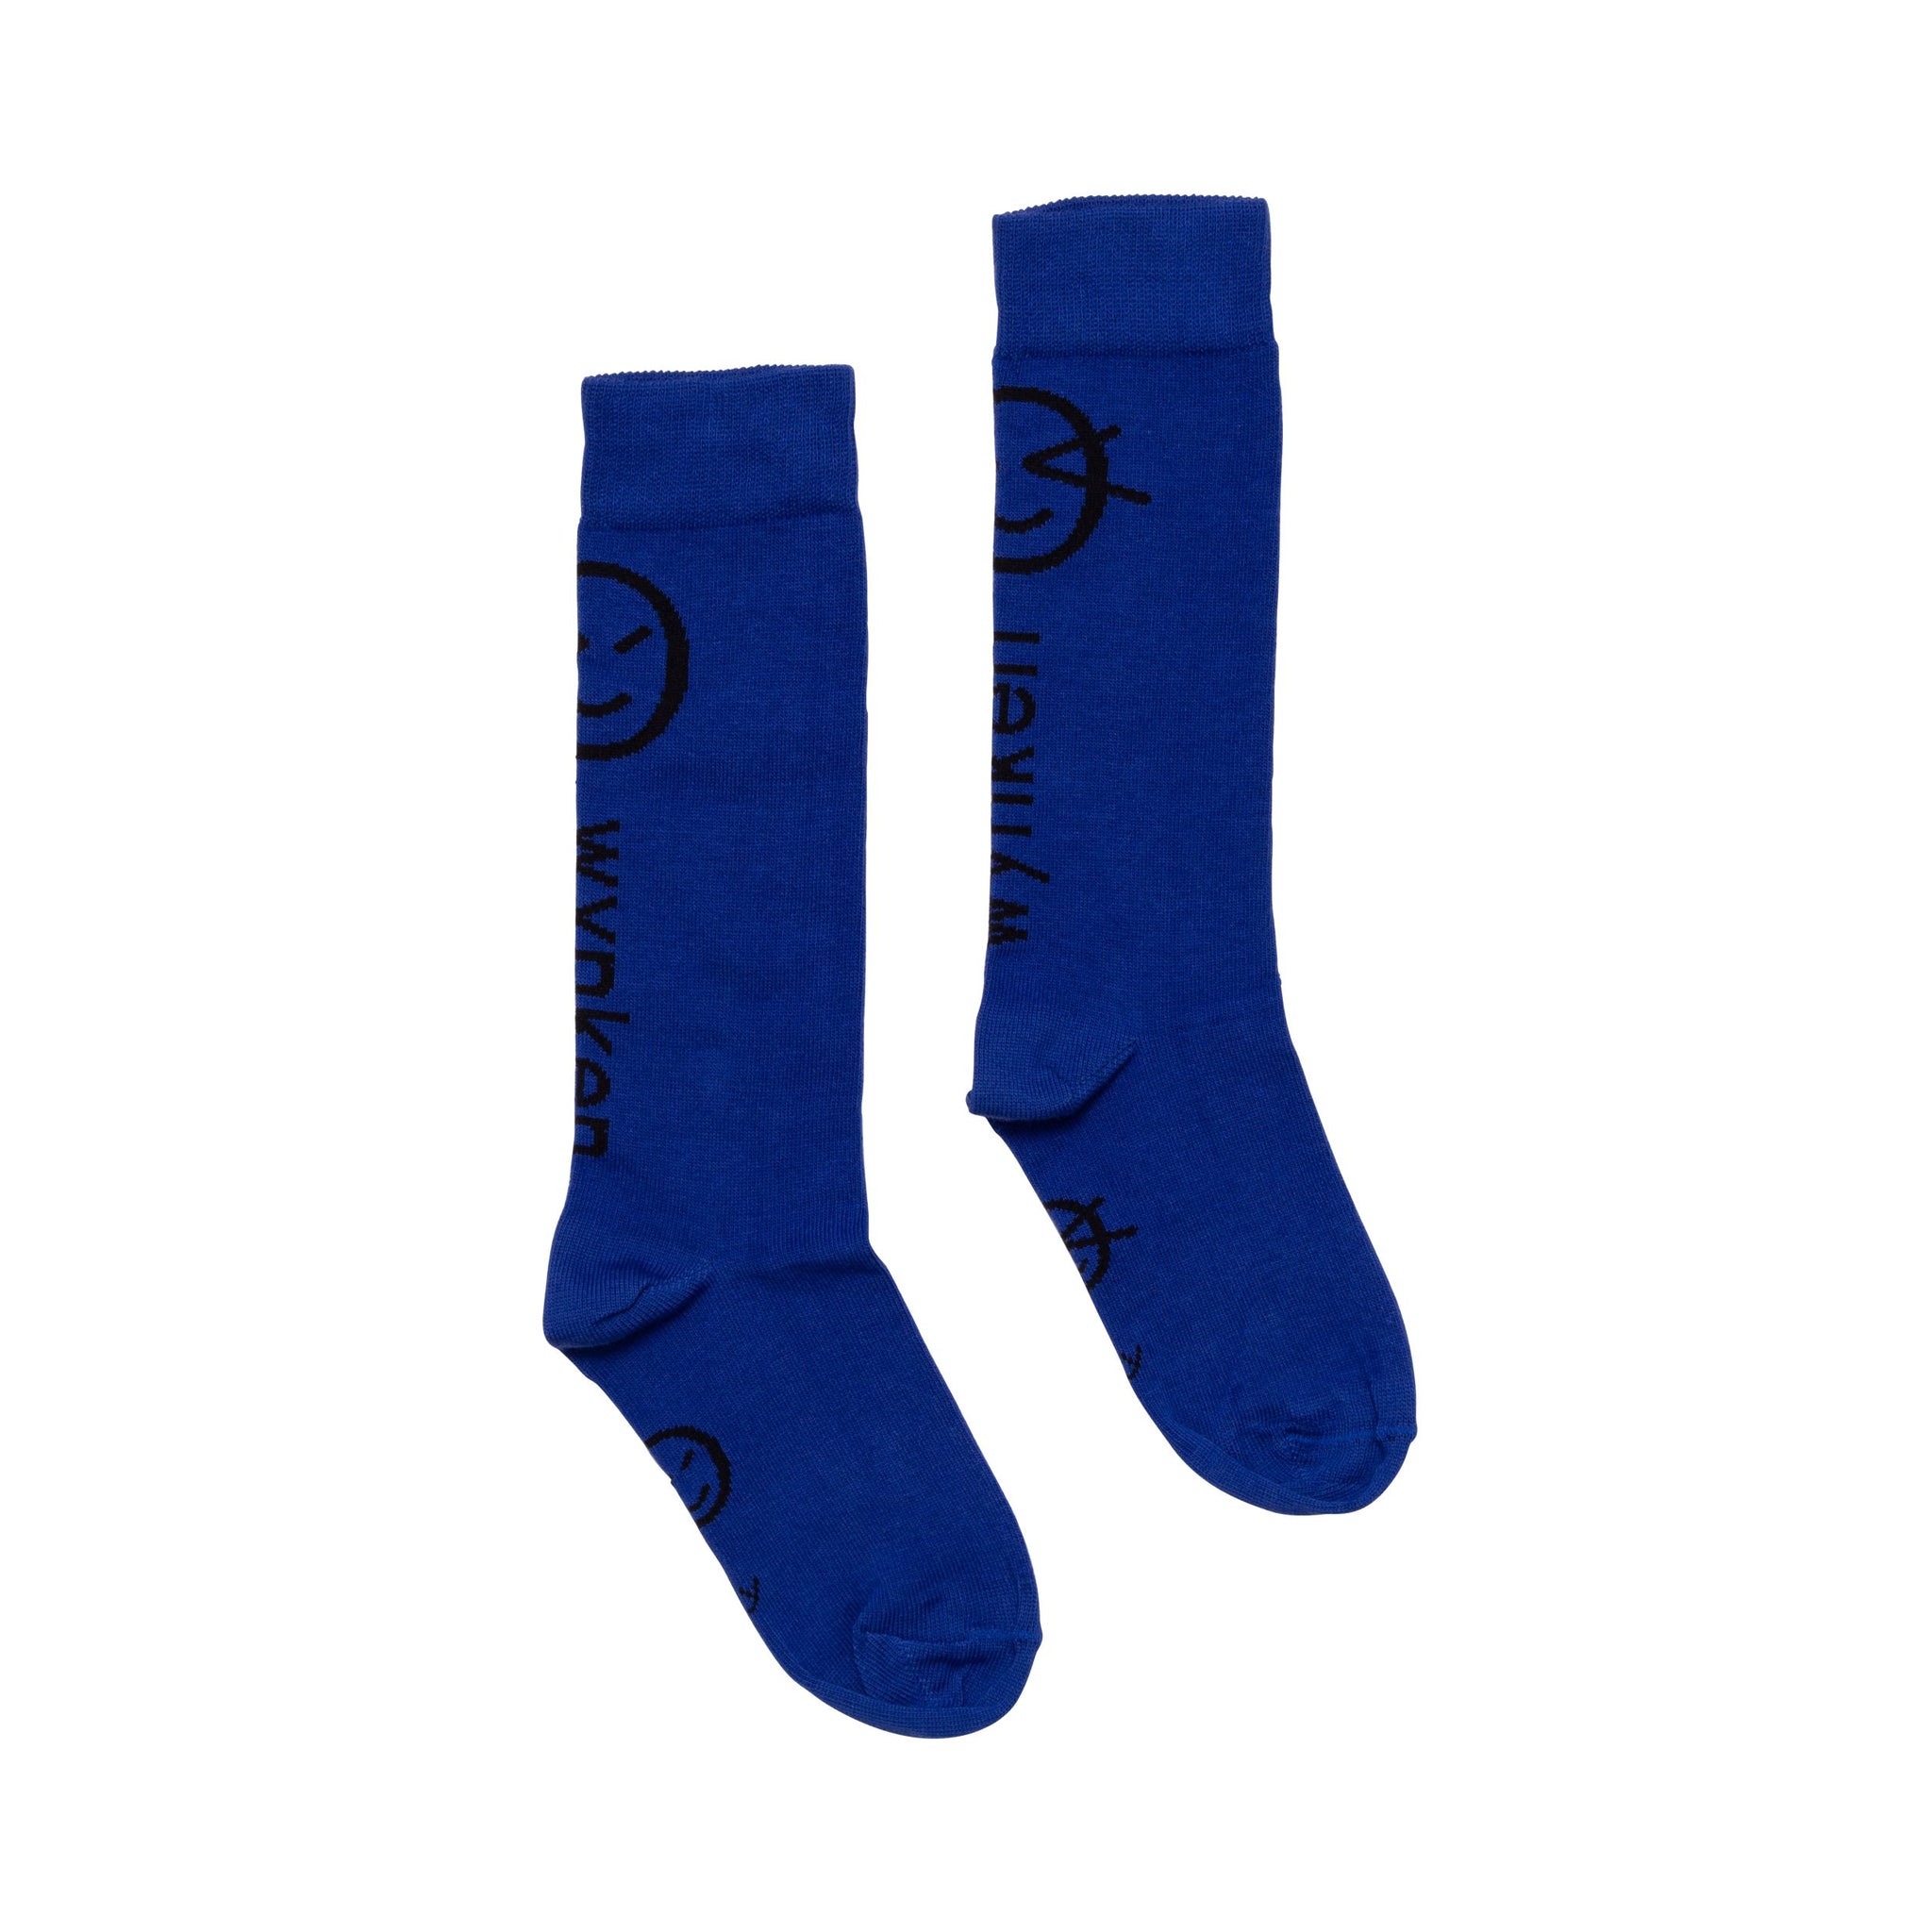 Wynken Sock - Blue